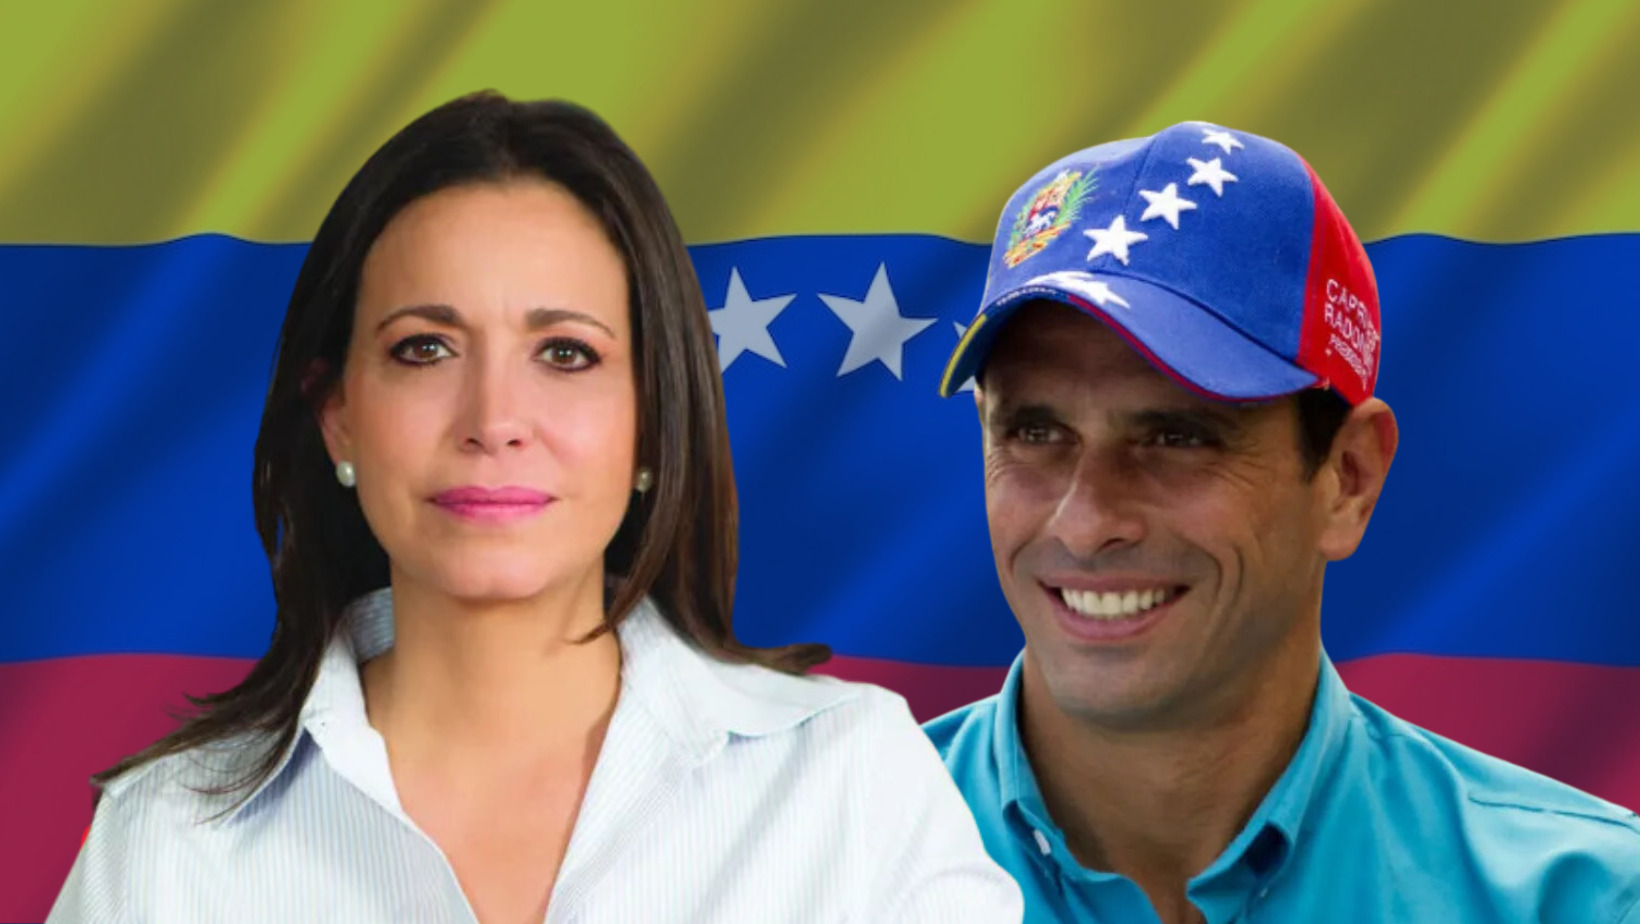 Rechazan inhabilitación política María Corina Machado y Henrique Capriles.(Foto: Fuente externa).